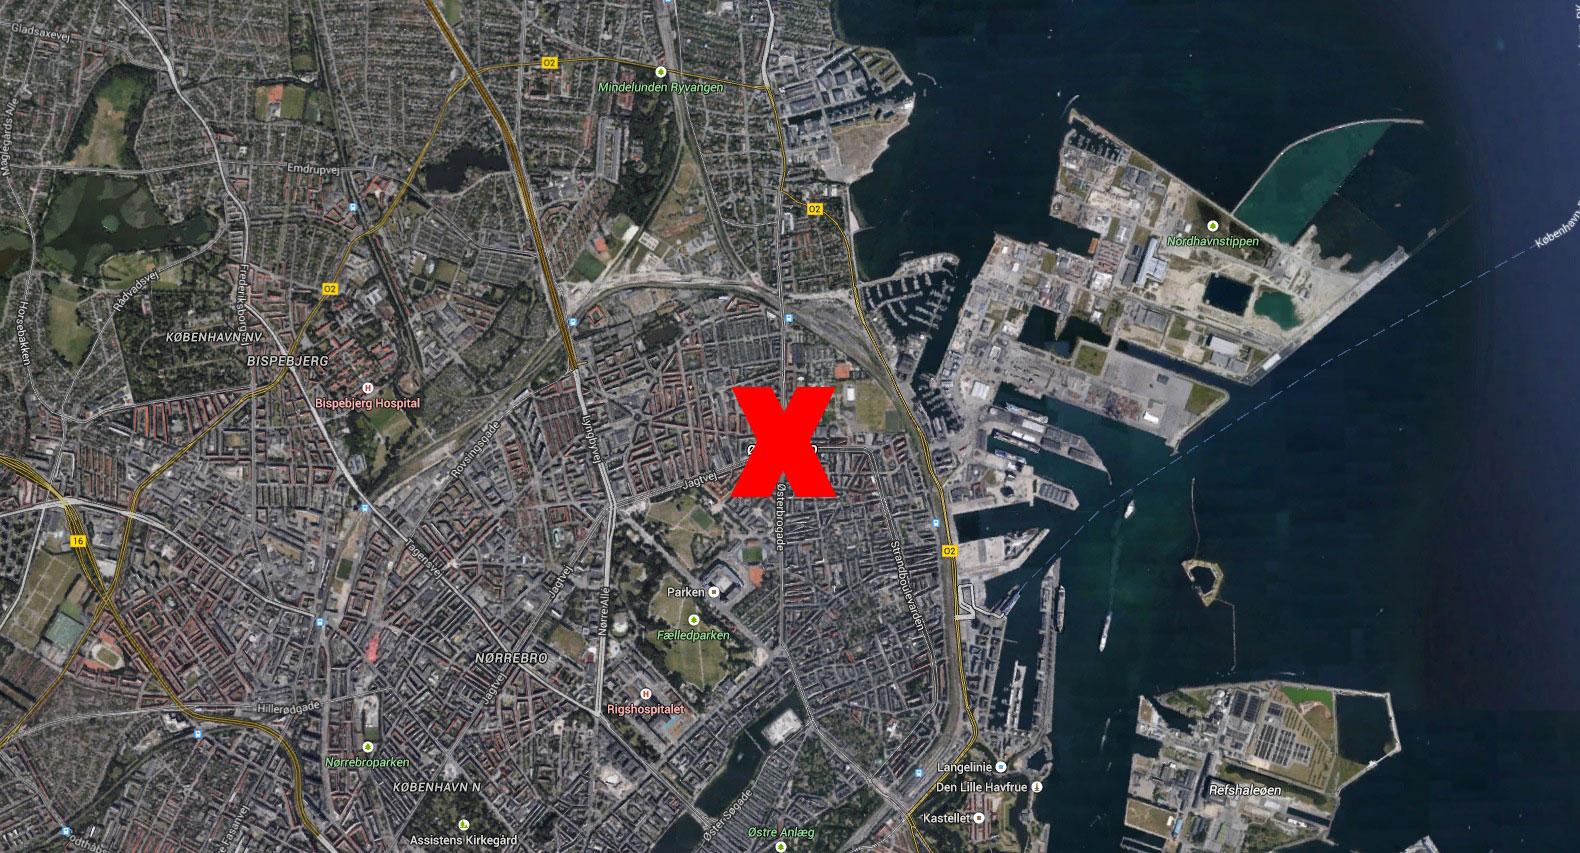 På söndagseftermiddagen greps en person, som kan ha kopplingar till terrordåden, i Østerbro - bara några hundra meter i från platsen där den första terrorattacken ägde rum i går.